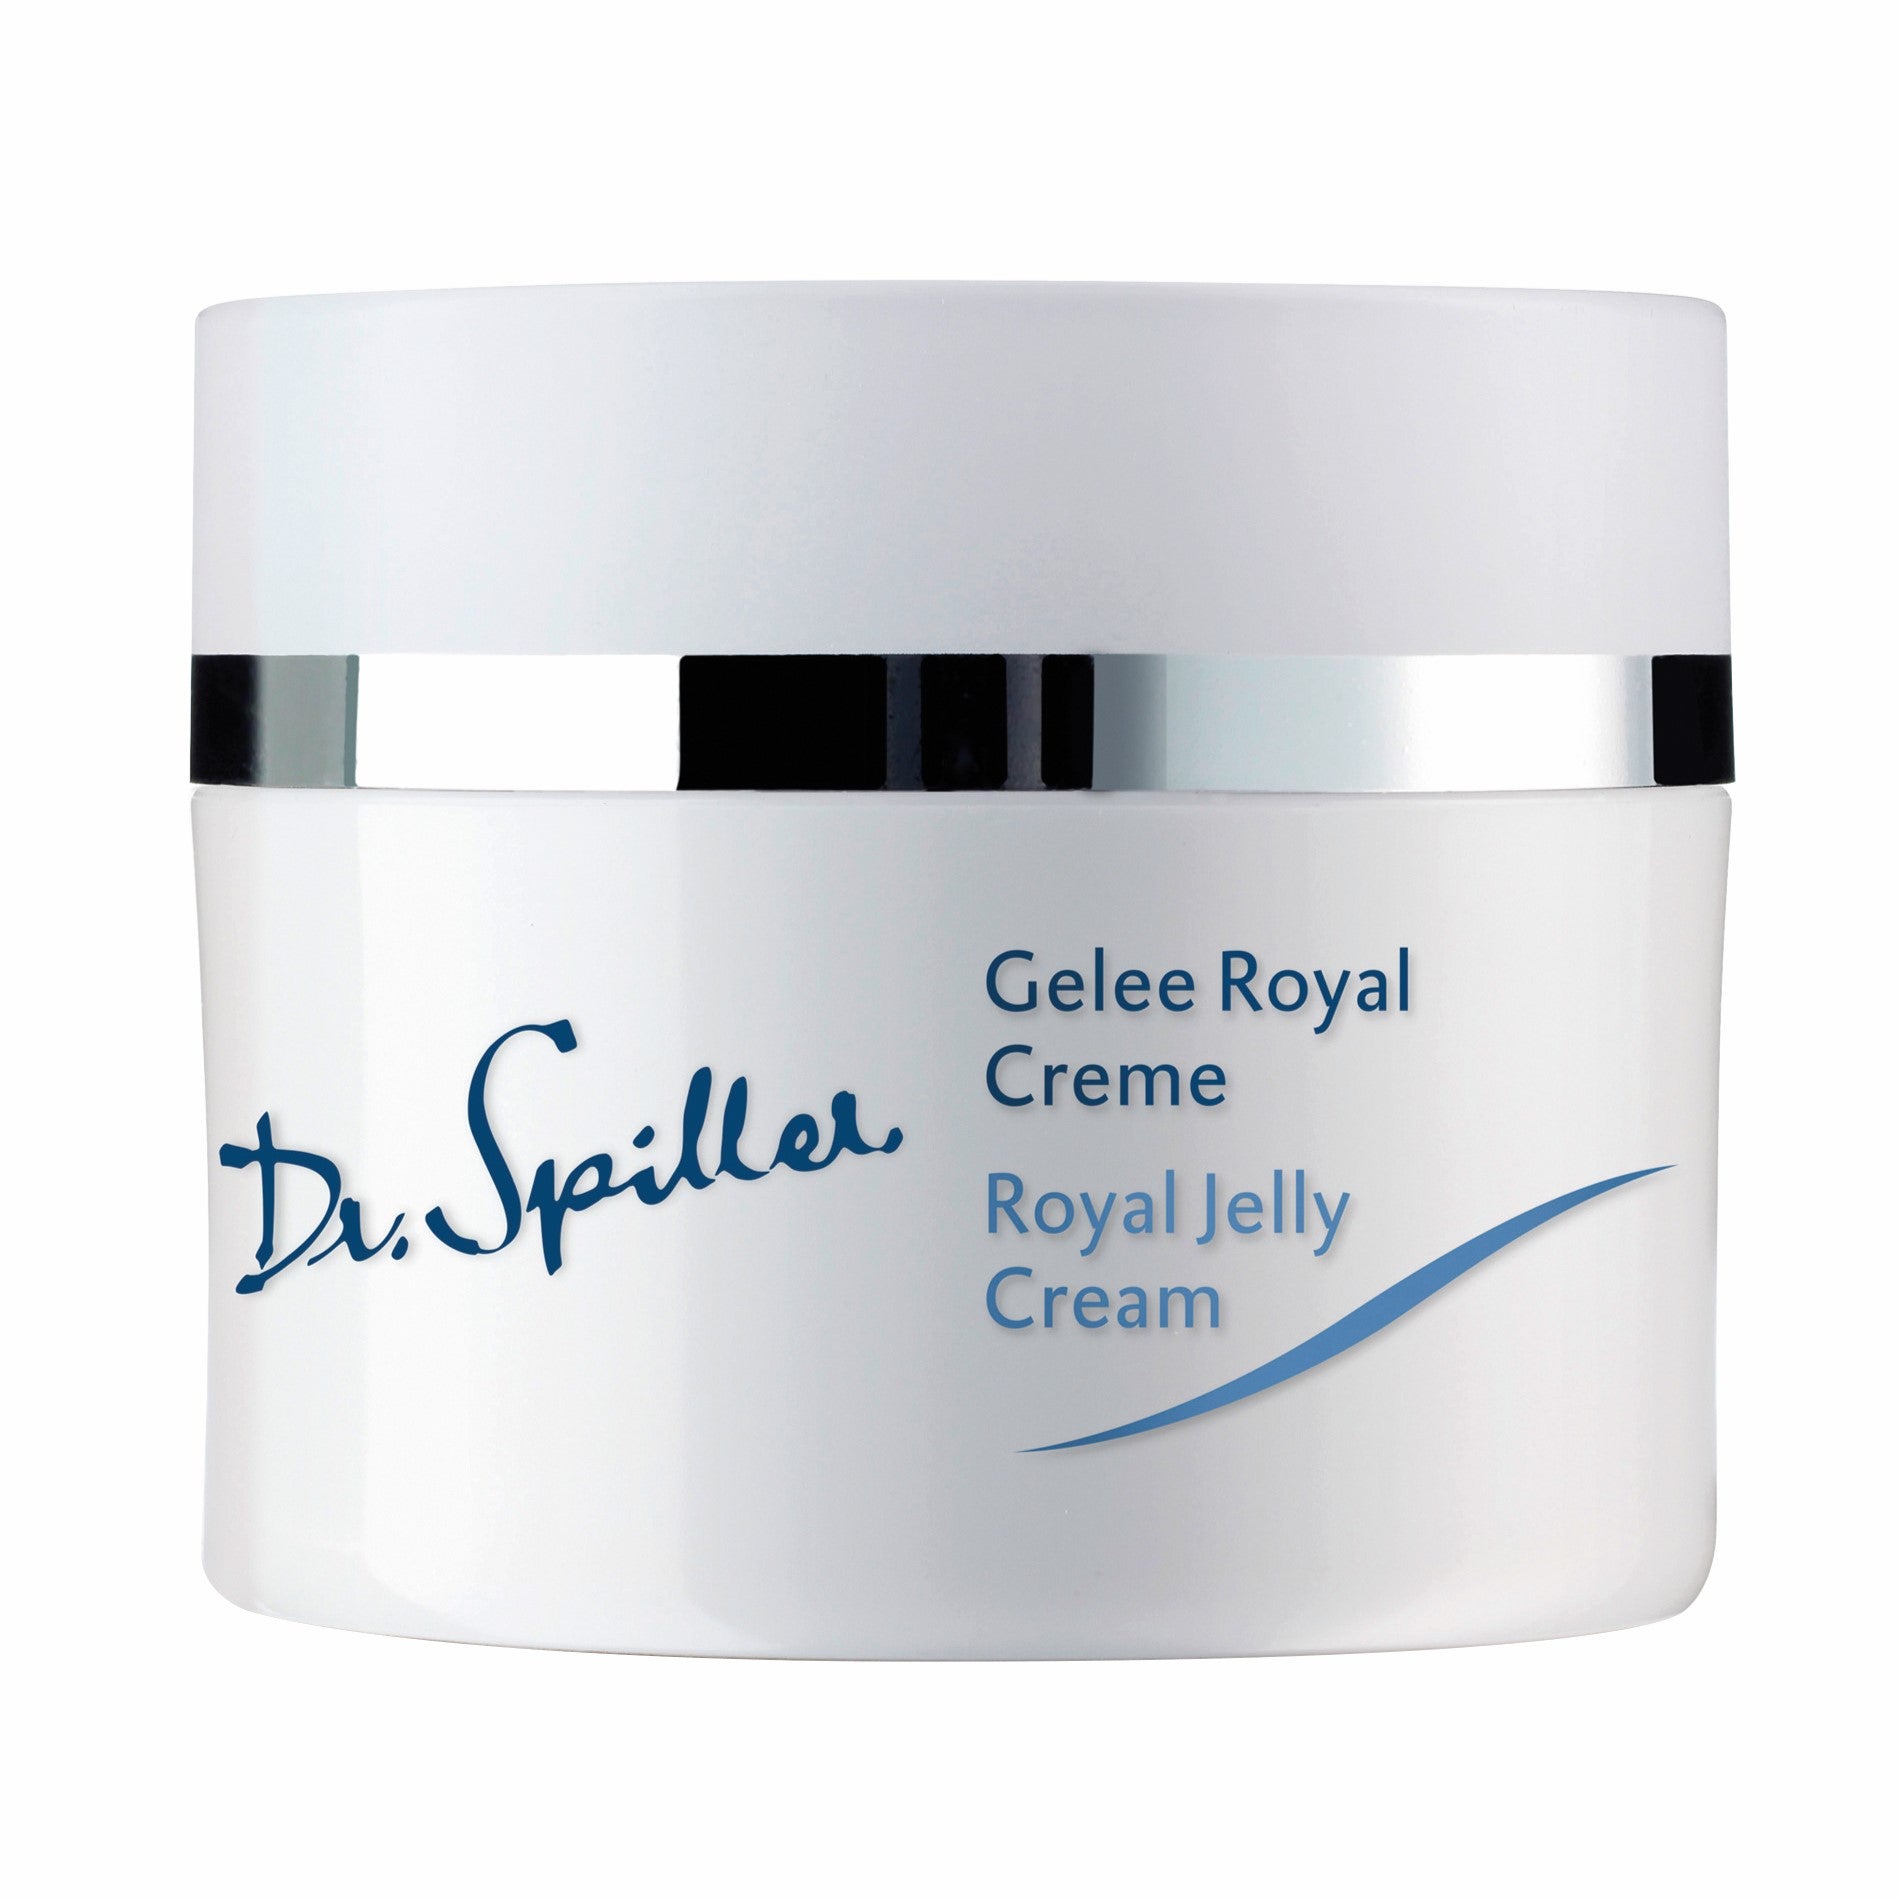 Dr. Spiller Gelee Royal Creme (50ml)